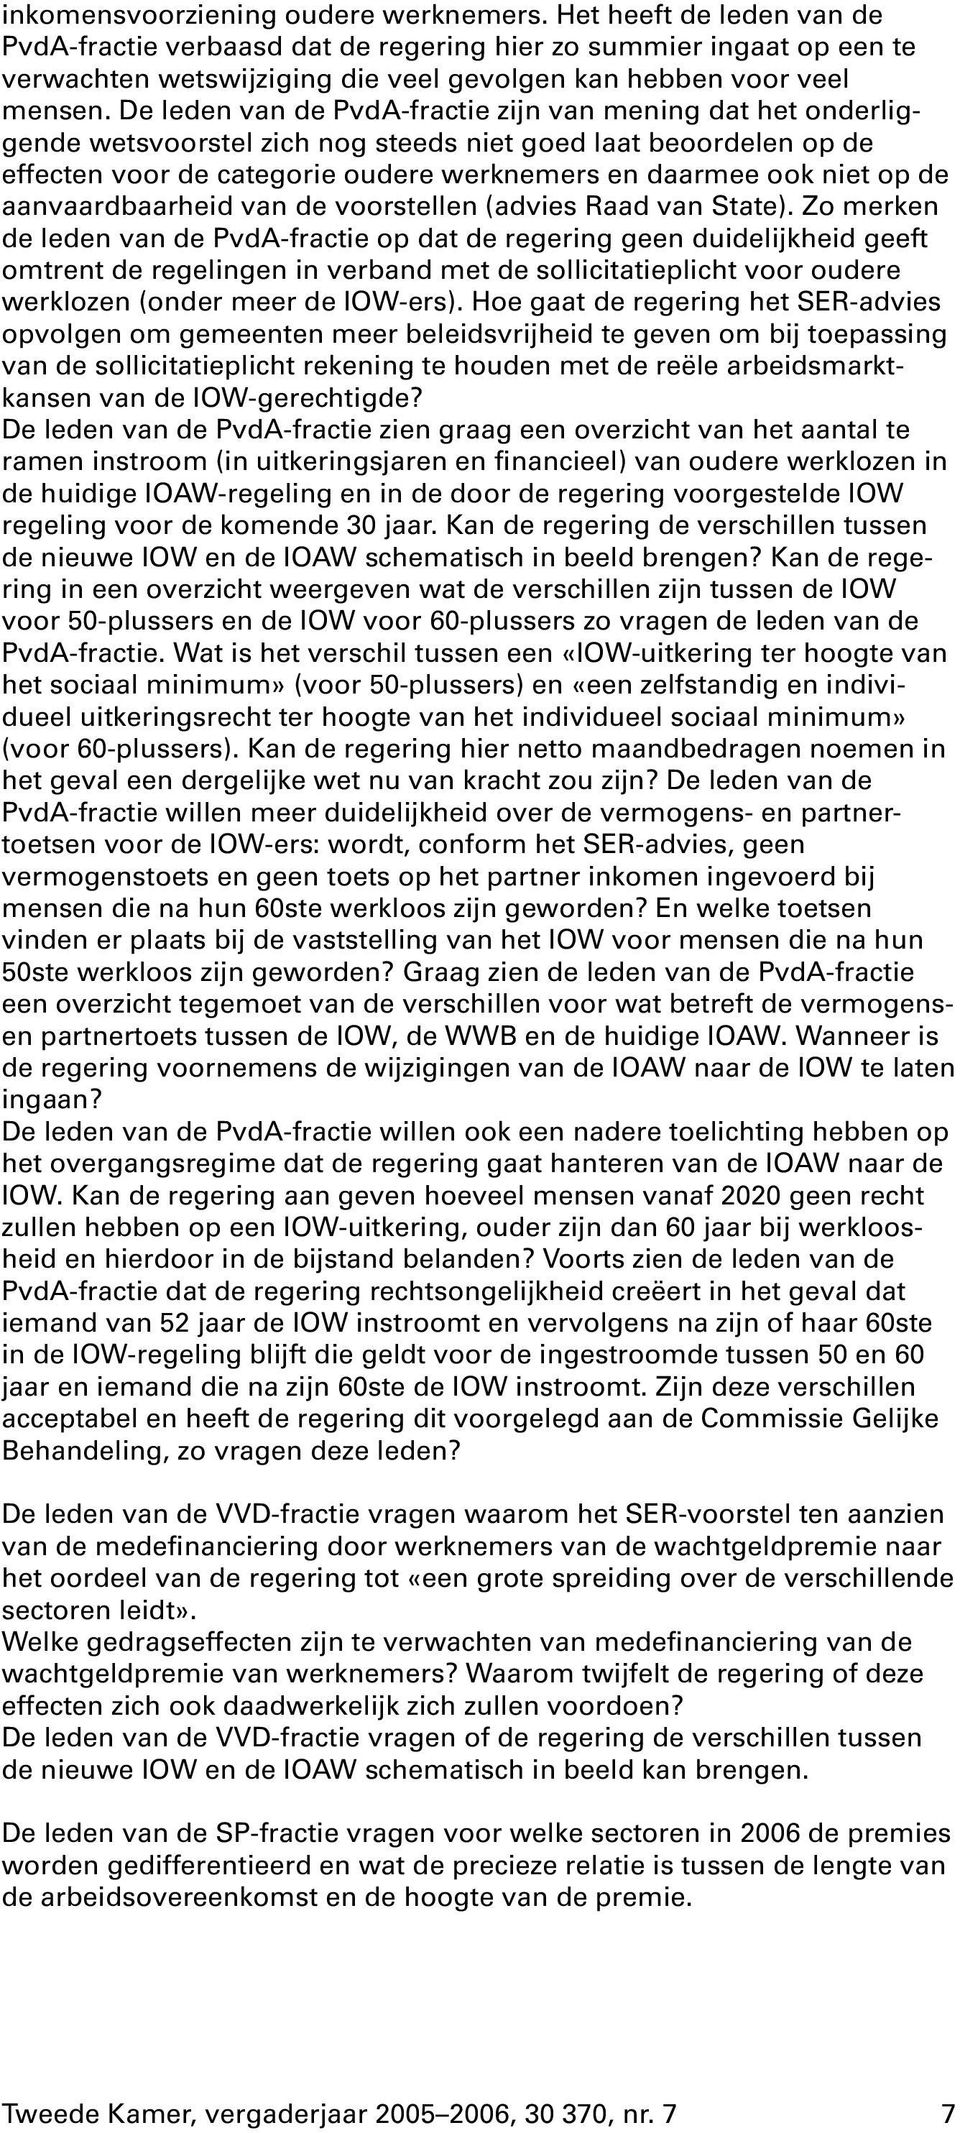 de leden van de PvdA-fractie zijn van mening dat het onderliggende wetsvoorstel zich nog steeds niet goed laat beoordelen op de effecten voor de categorie oudere werknemers en daarmee ook niet op de